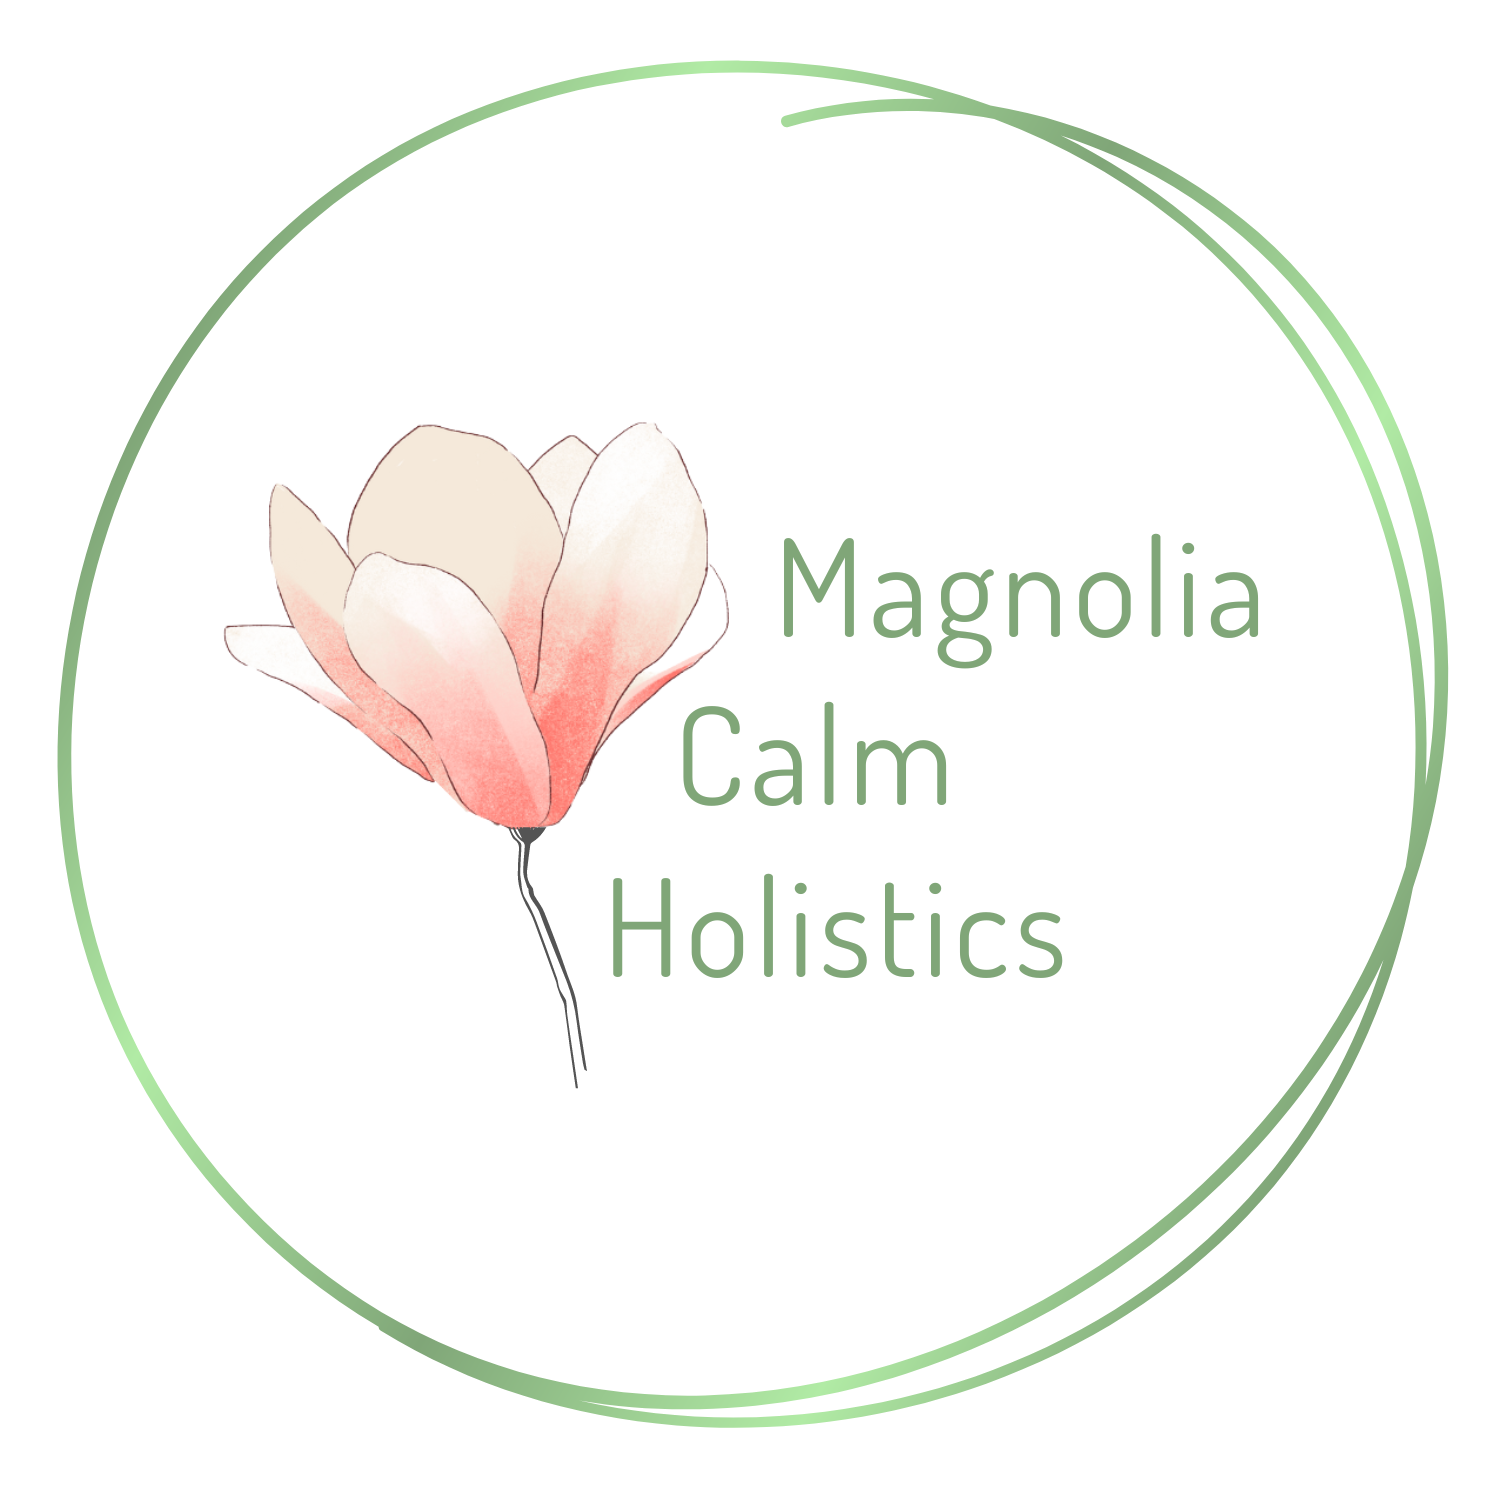 Magnolia Calm Holistics